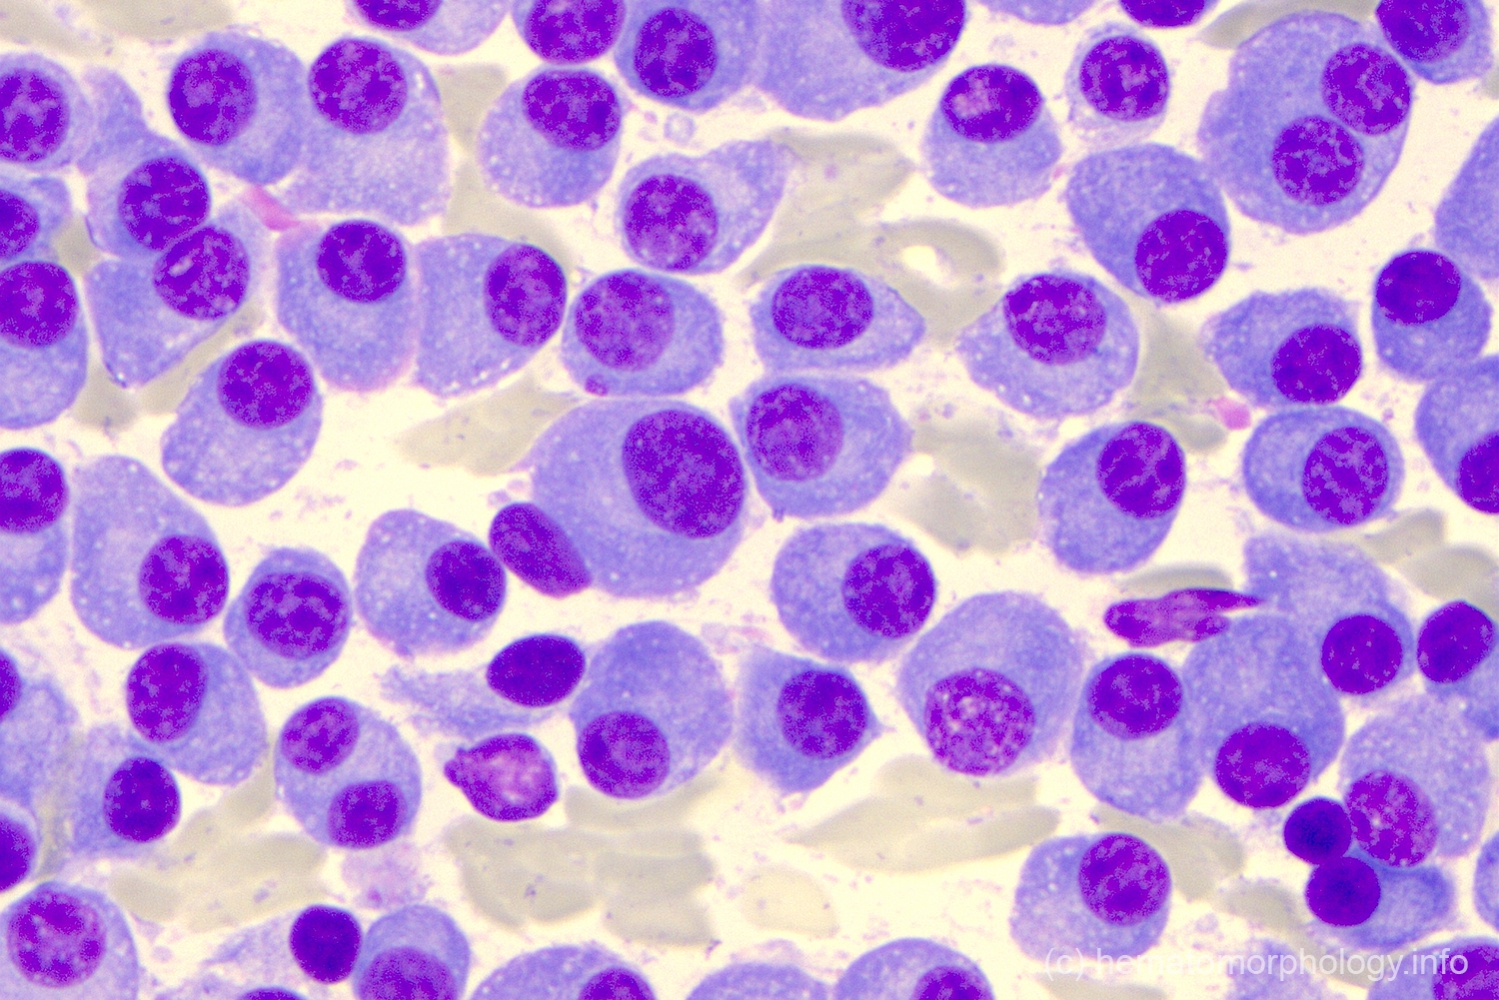 Plasma Cell Myeloma Hematomorphology A Databank Imagebank For